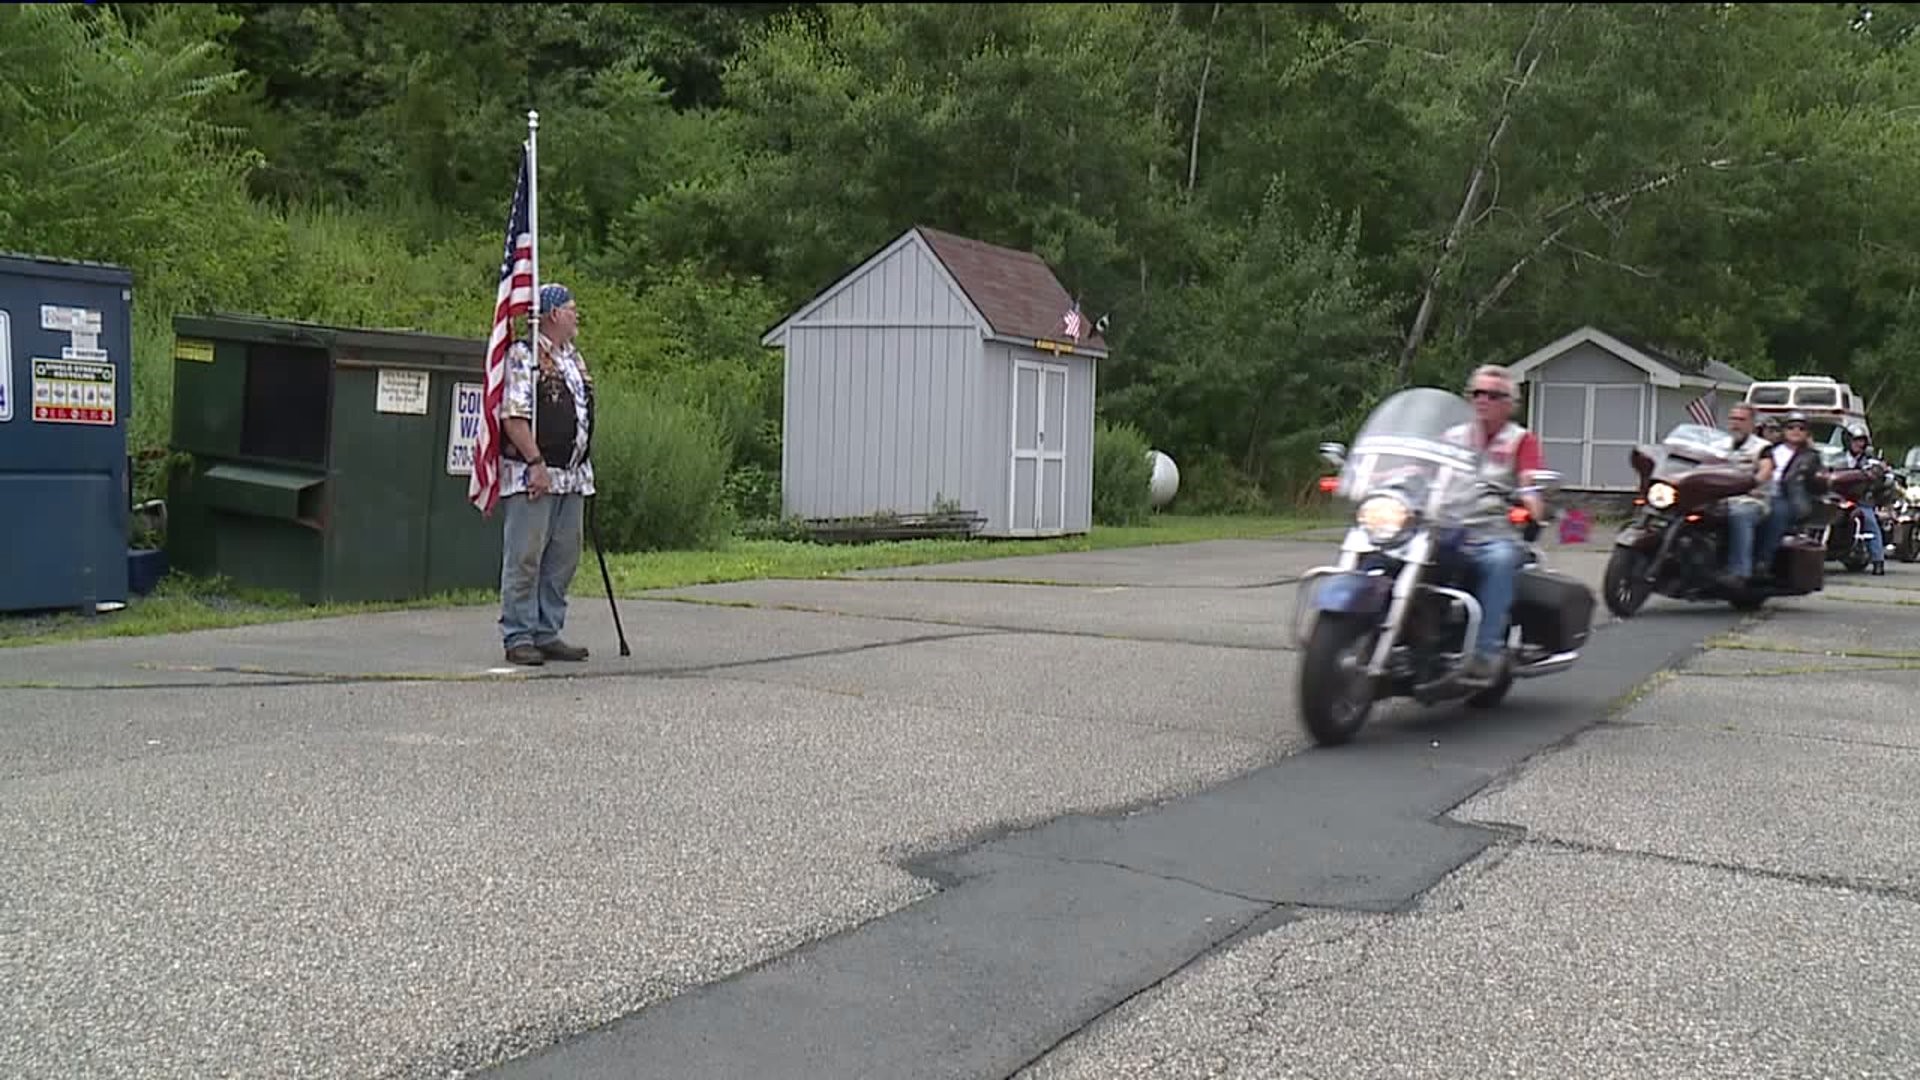 Motorcycle Ride for Veterans in Poconos